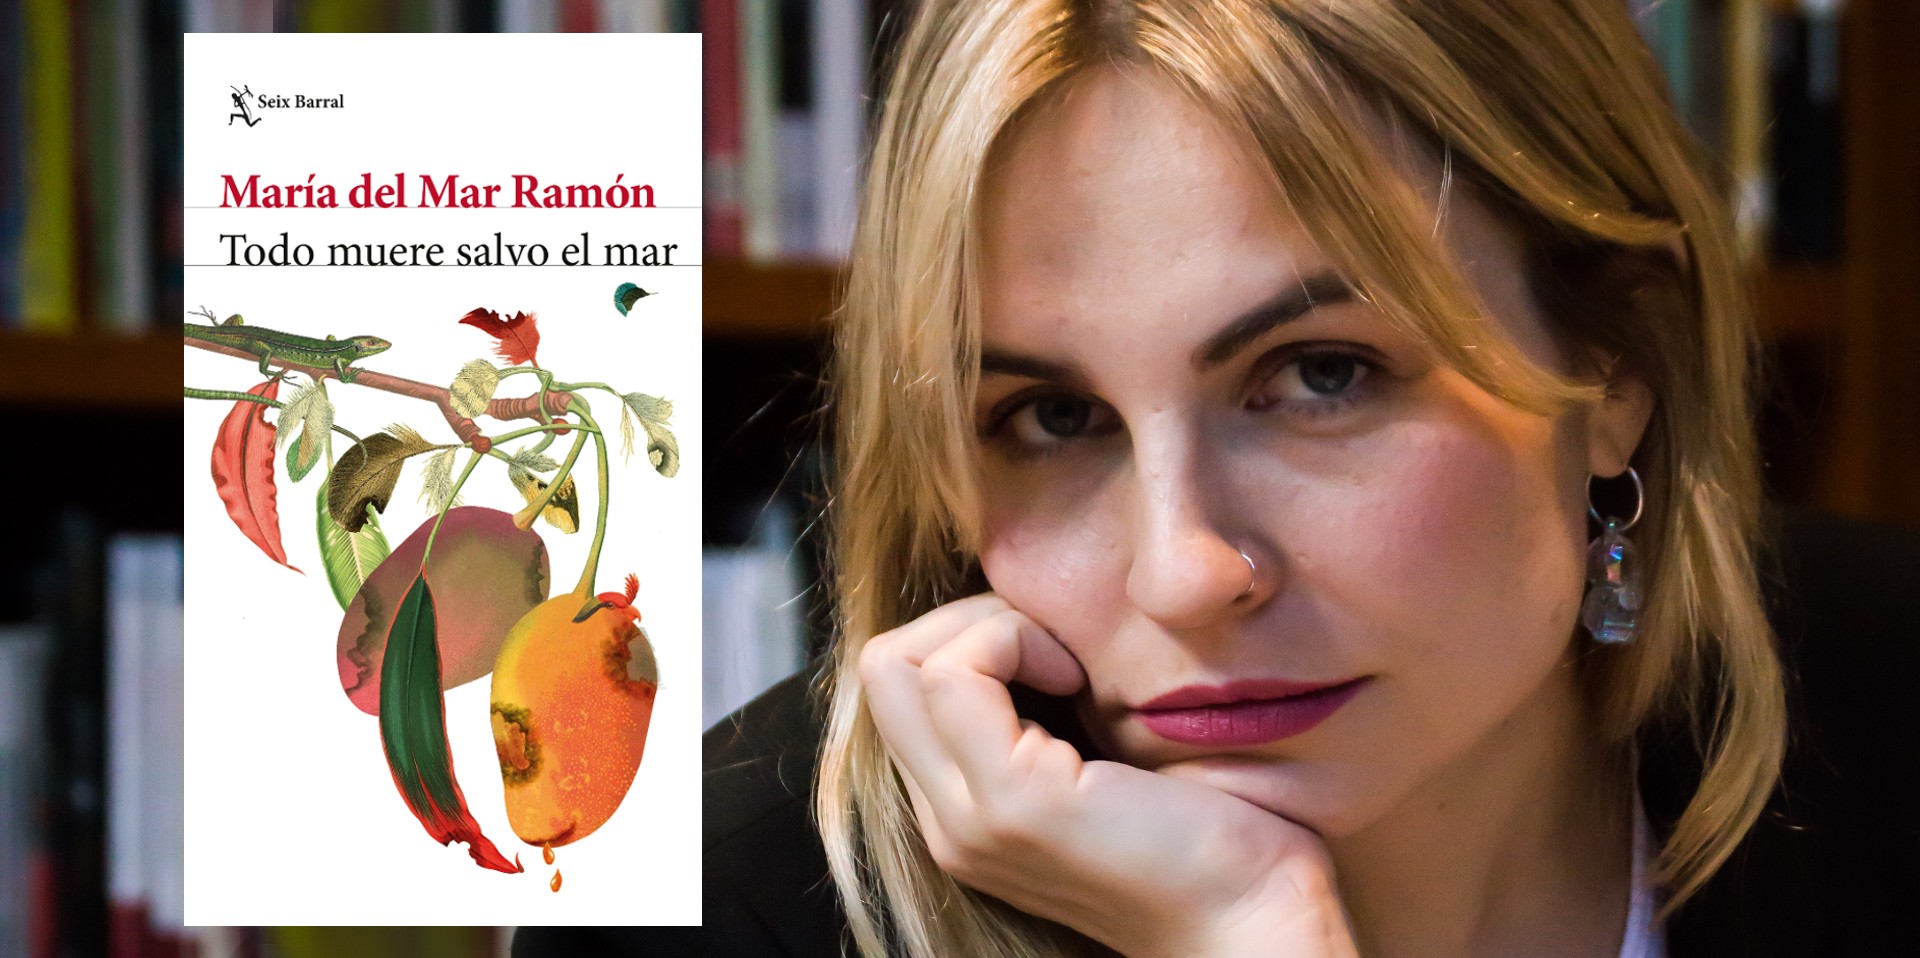 La también autora de "La manada" es una de las voces destacadas del nuevo panorama de la literatura colombiana. (Ph. Jimena Cortés Mora).